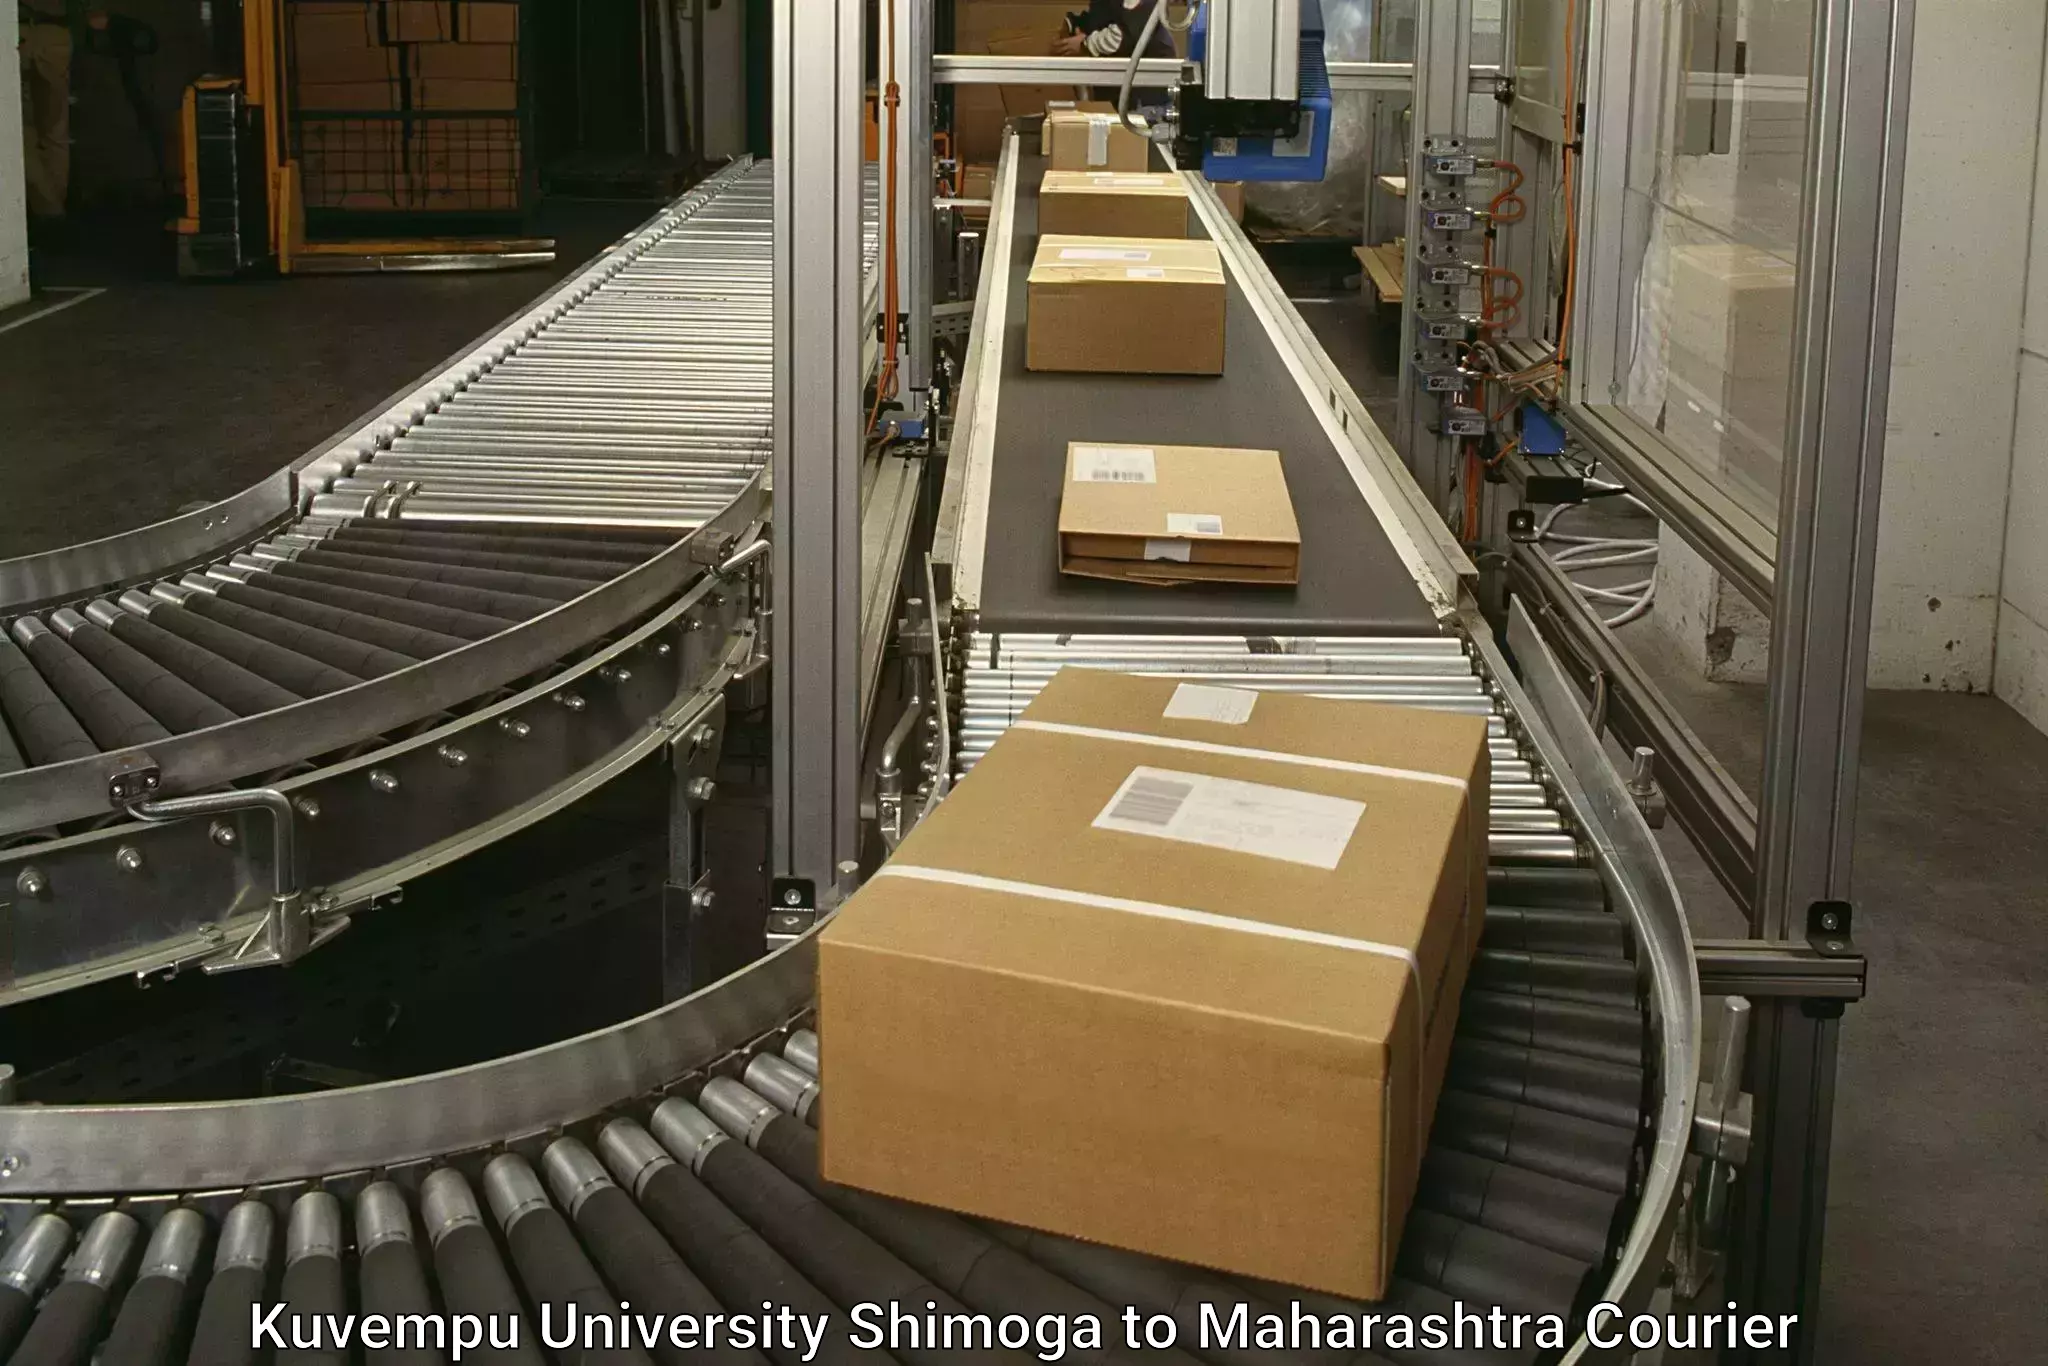 Cash on delivery service Kuvempu University Shimoga to Shrivardhan